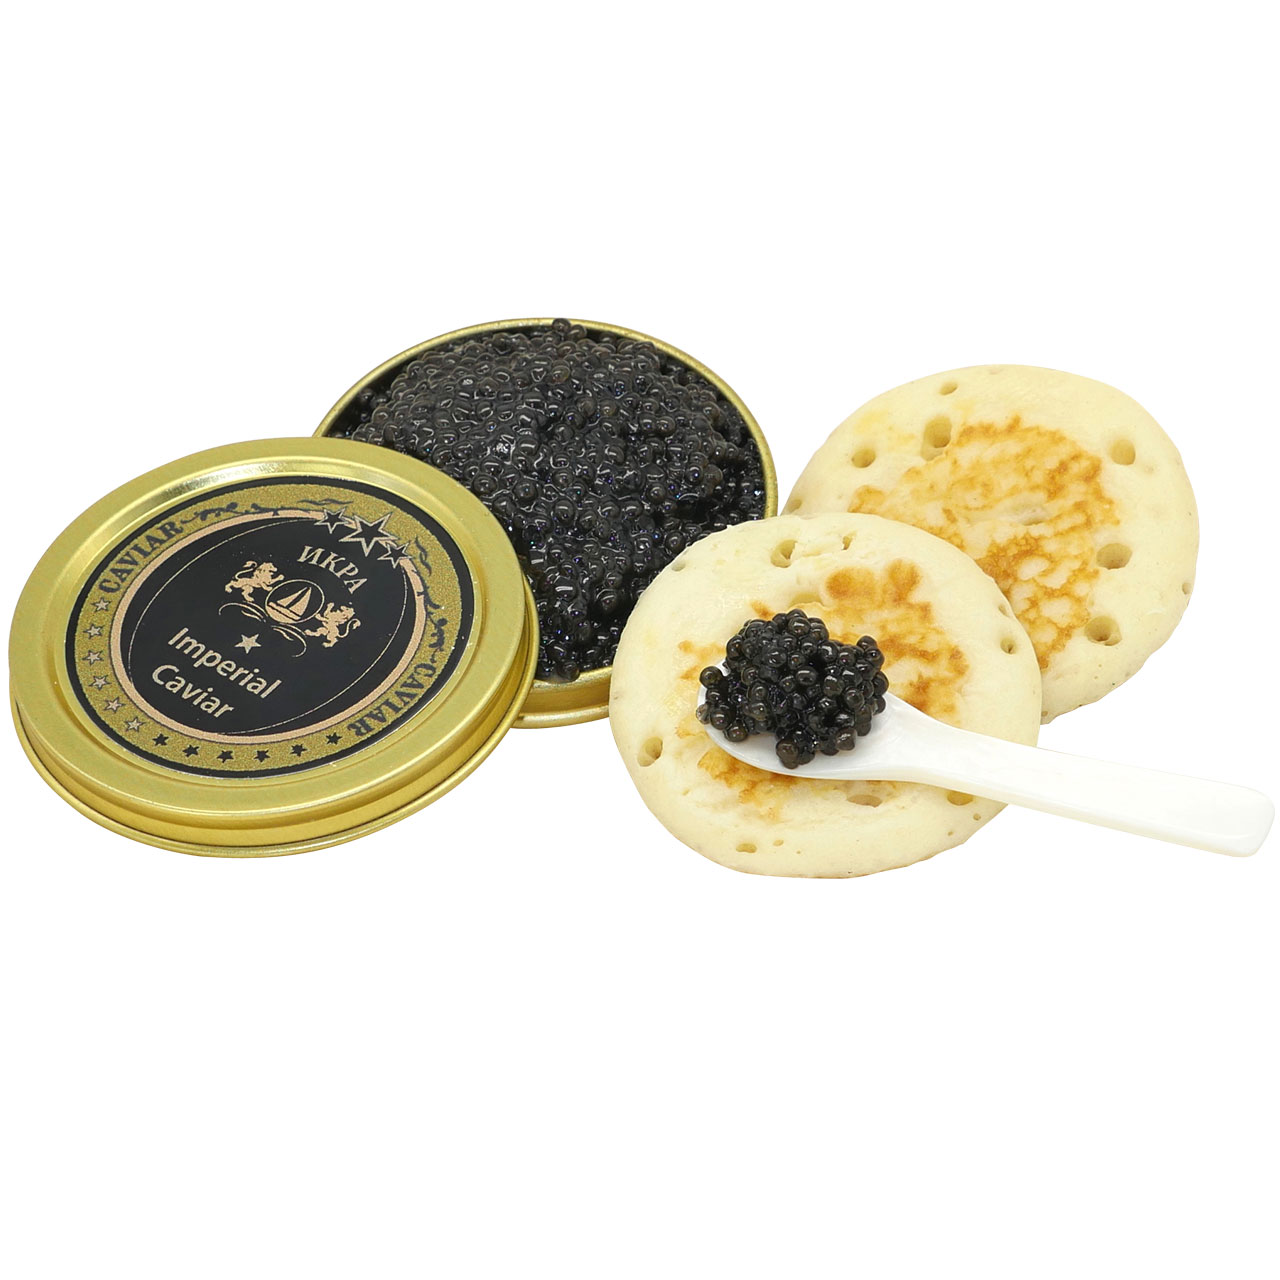 Imperial Kaviar russischer Stör 50g + 50g